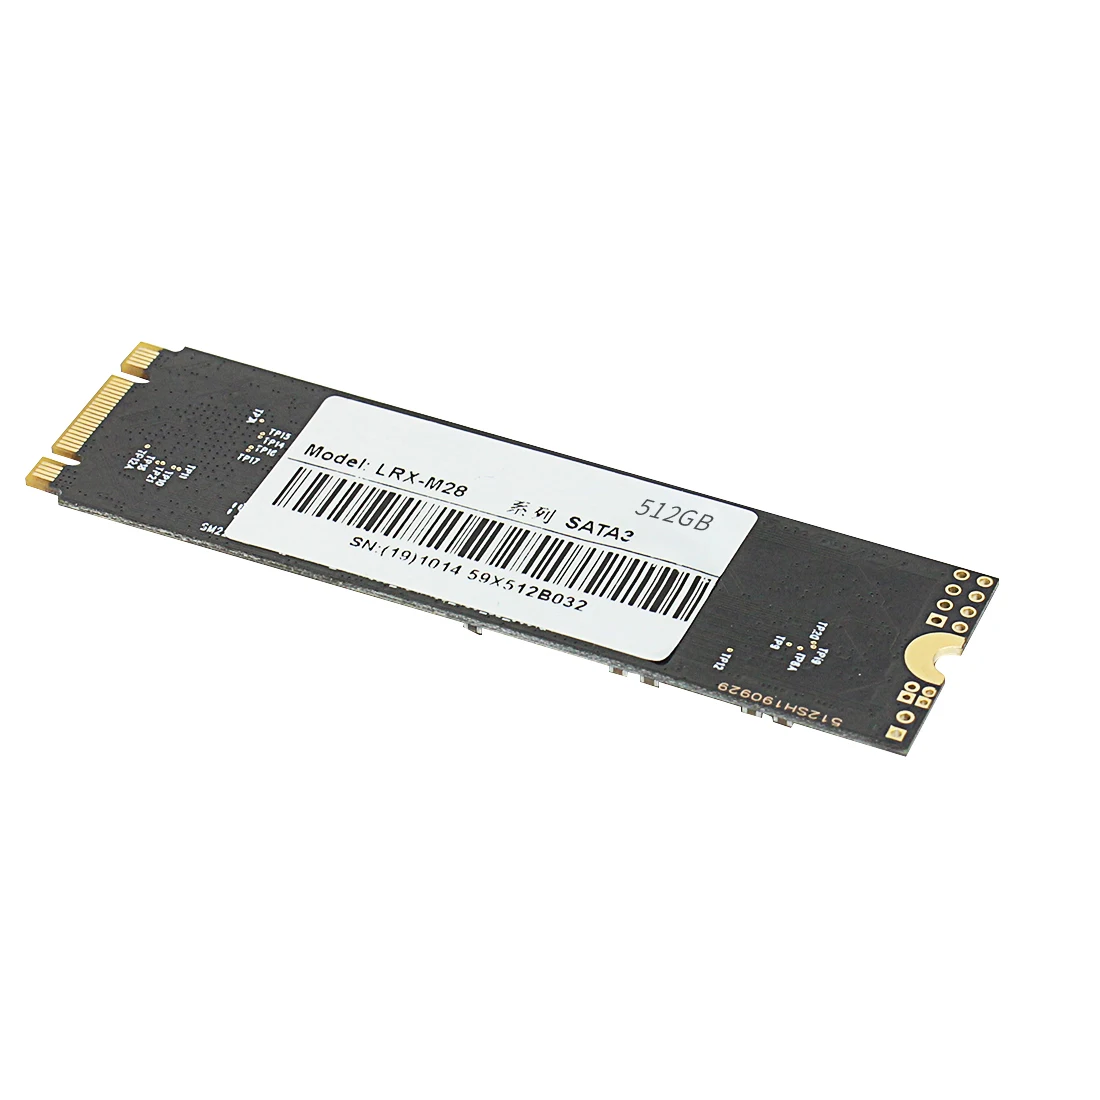 SSD M2 PCIe 64G 120  128  256  512  1  PCI-e m.2 SSD 22*80  HDD    NGFF 2280